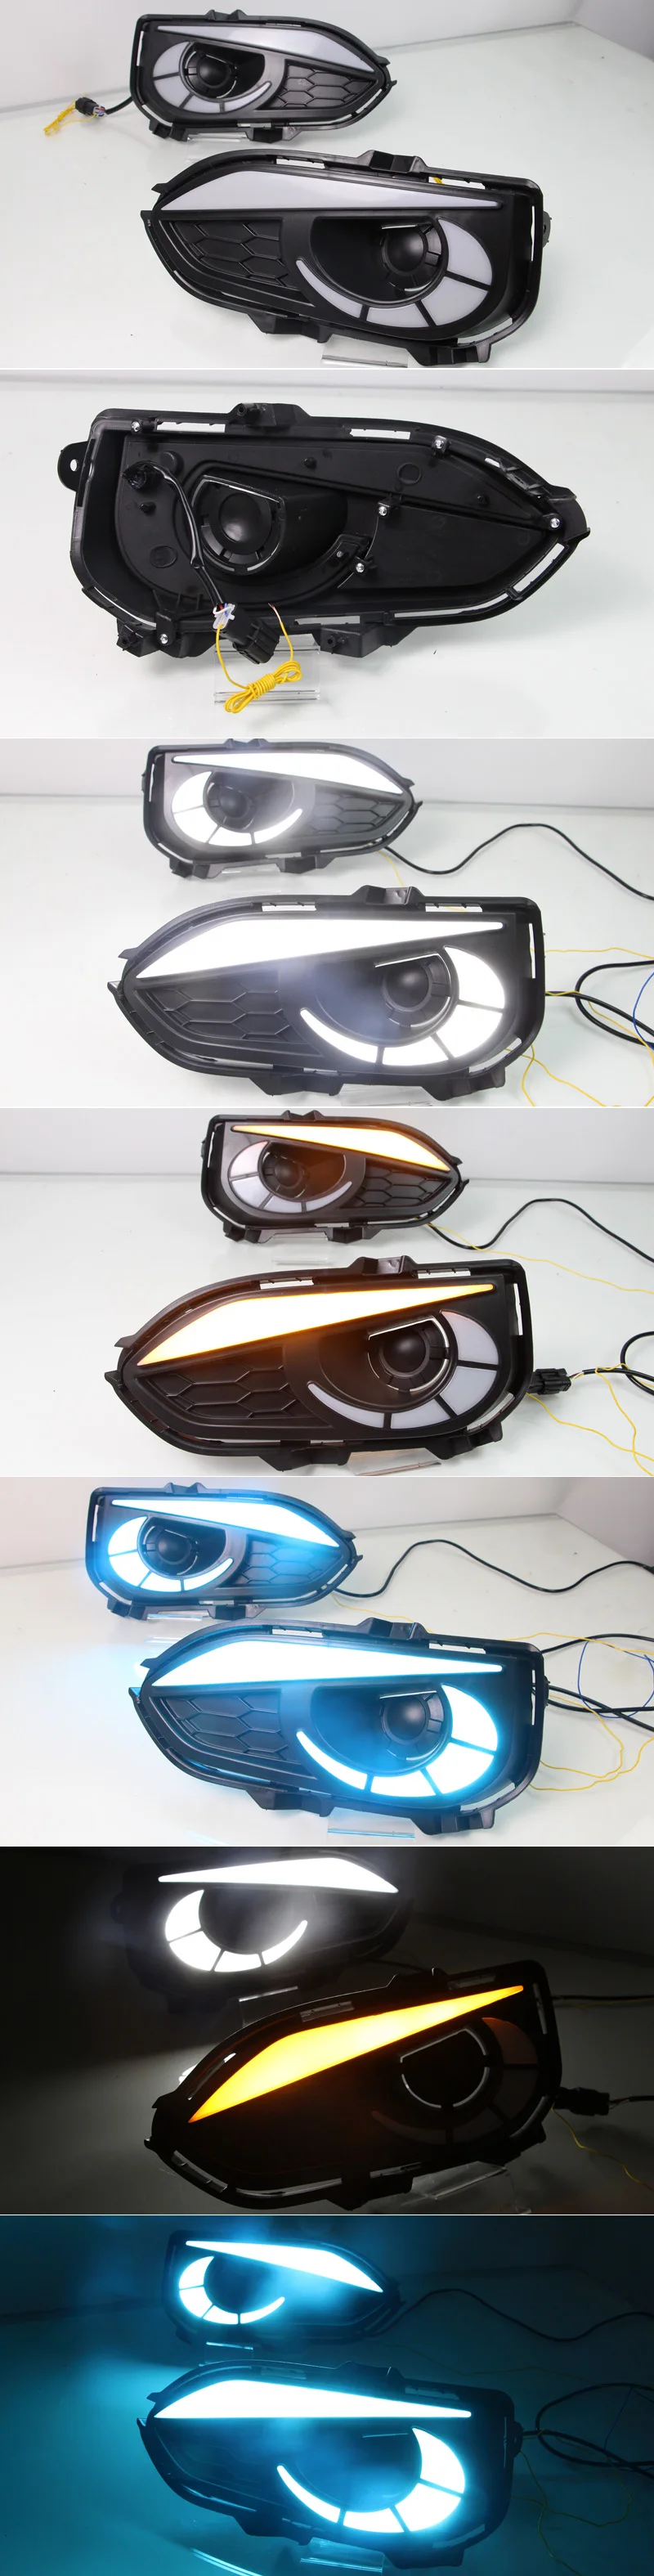 SNCN 2 шт. светодиодный светильник дневного света для Honda Fit Jazz автомобильные аксессуары водонепроницаемый 12 В DRL светодиодный противотуманный фонарь украшение